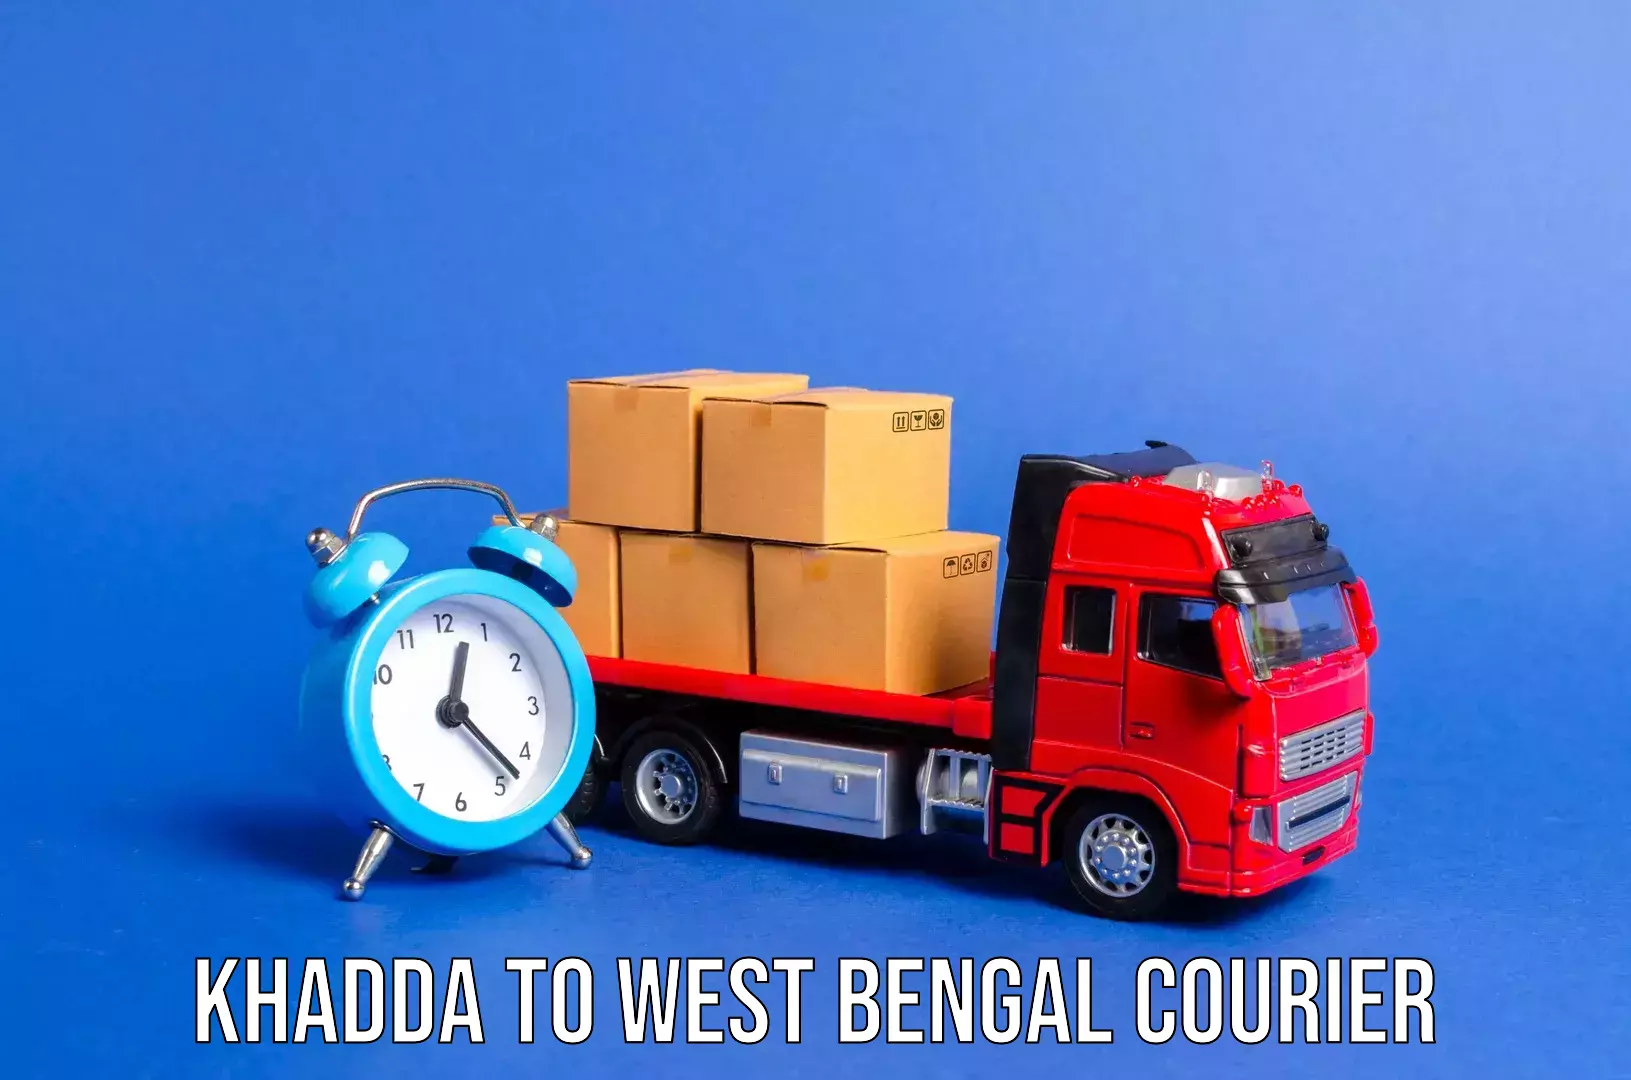 Luggage shipment specialists Khadda to Maheshtala